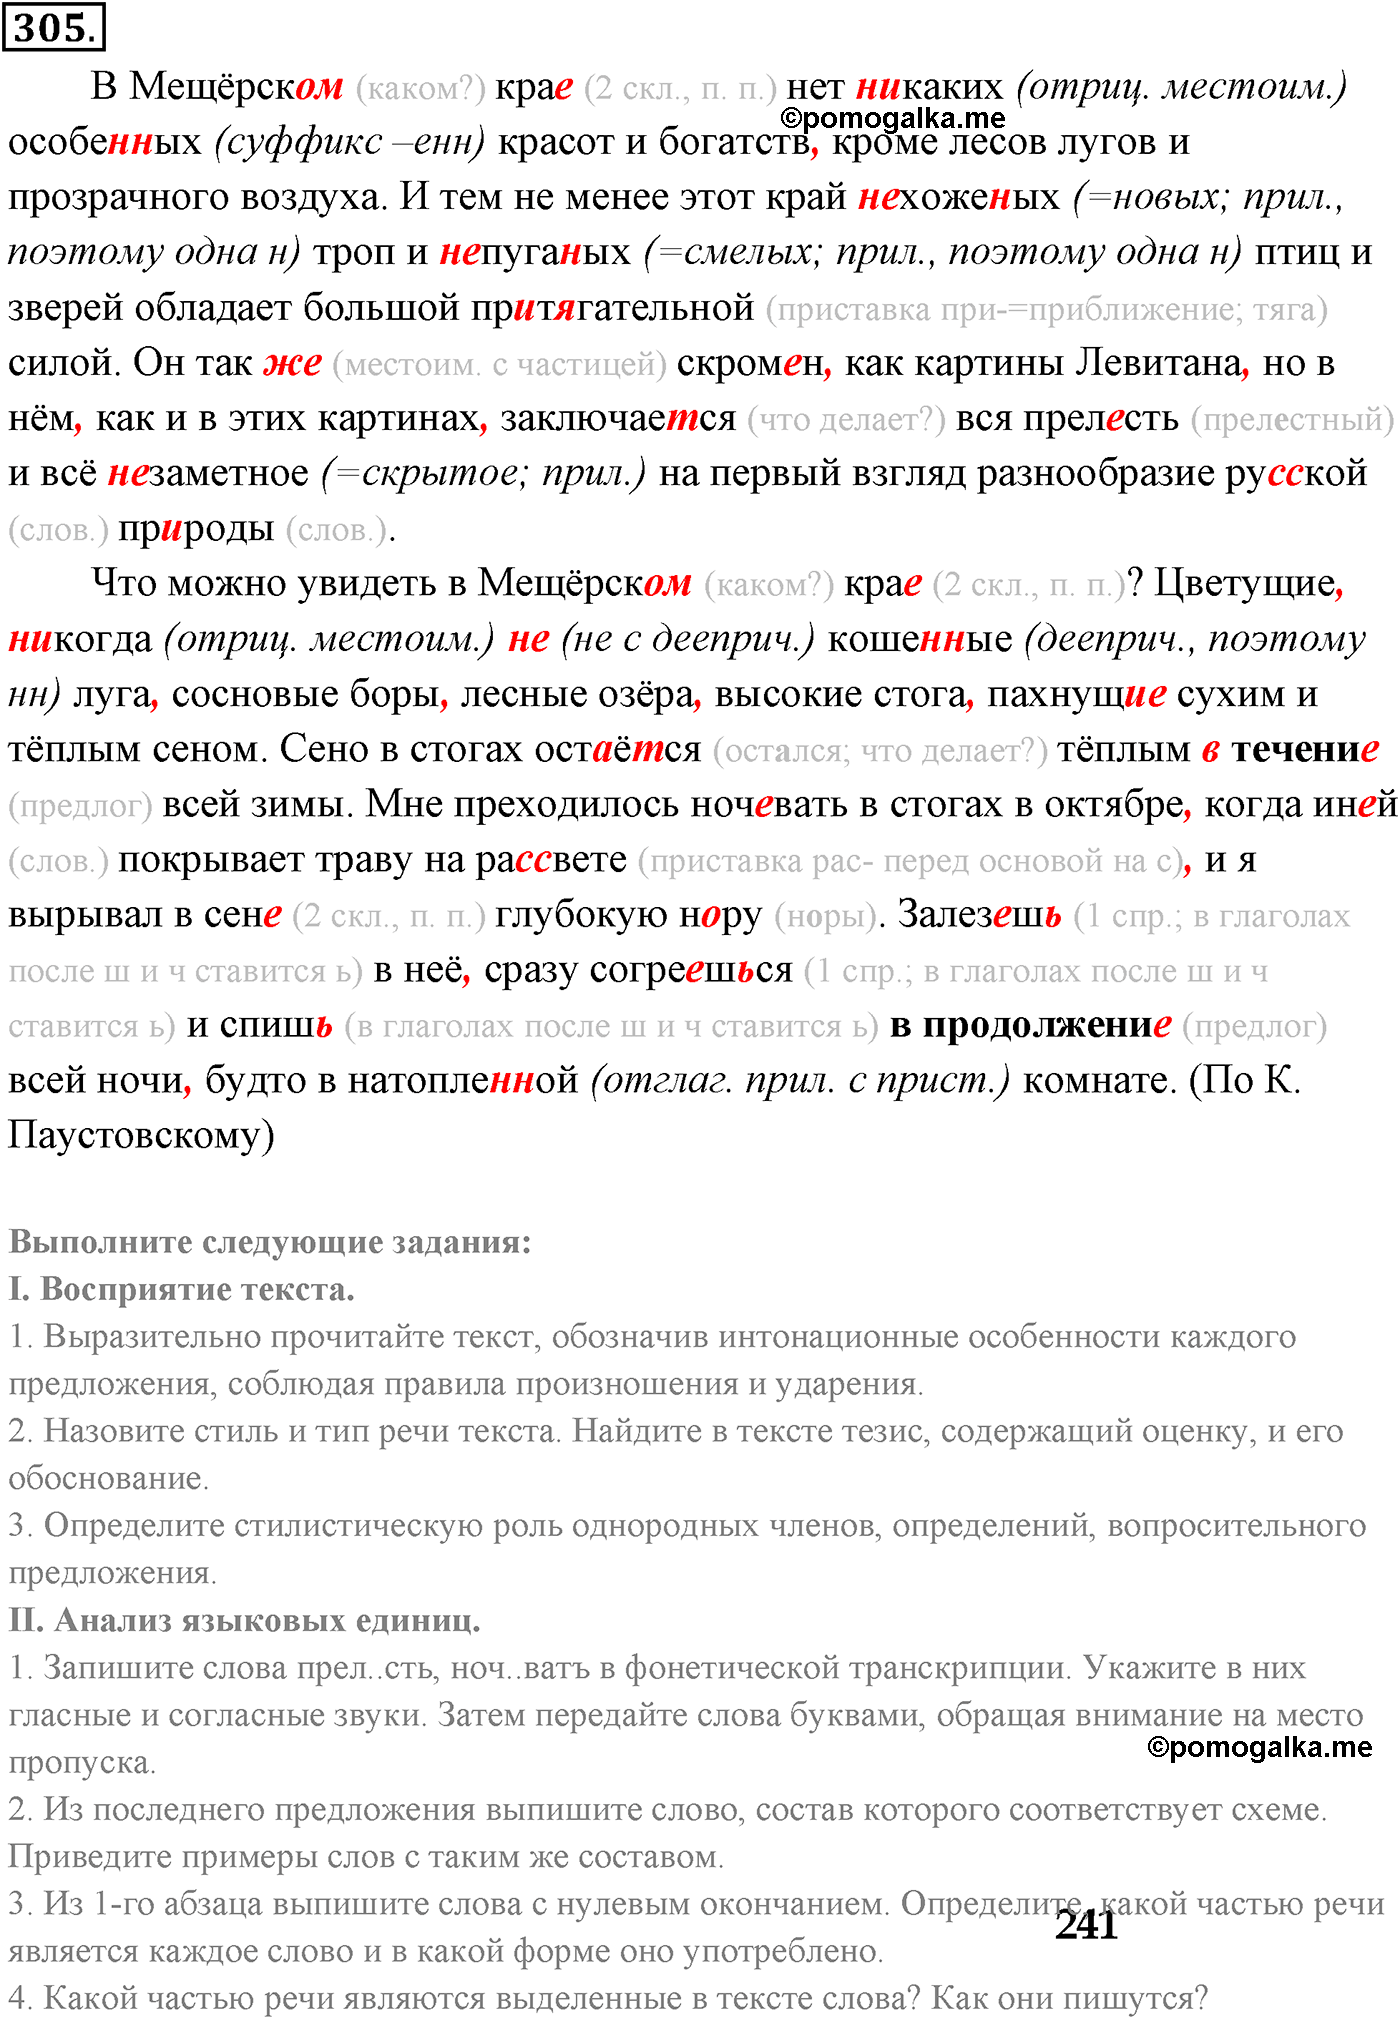 страница 228 номер 305 русский язык 9 класс Разумовская 2011 год